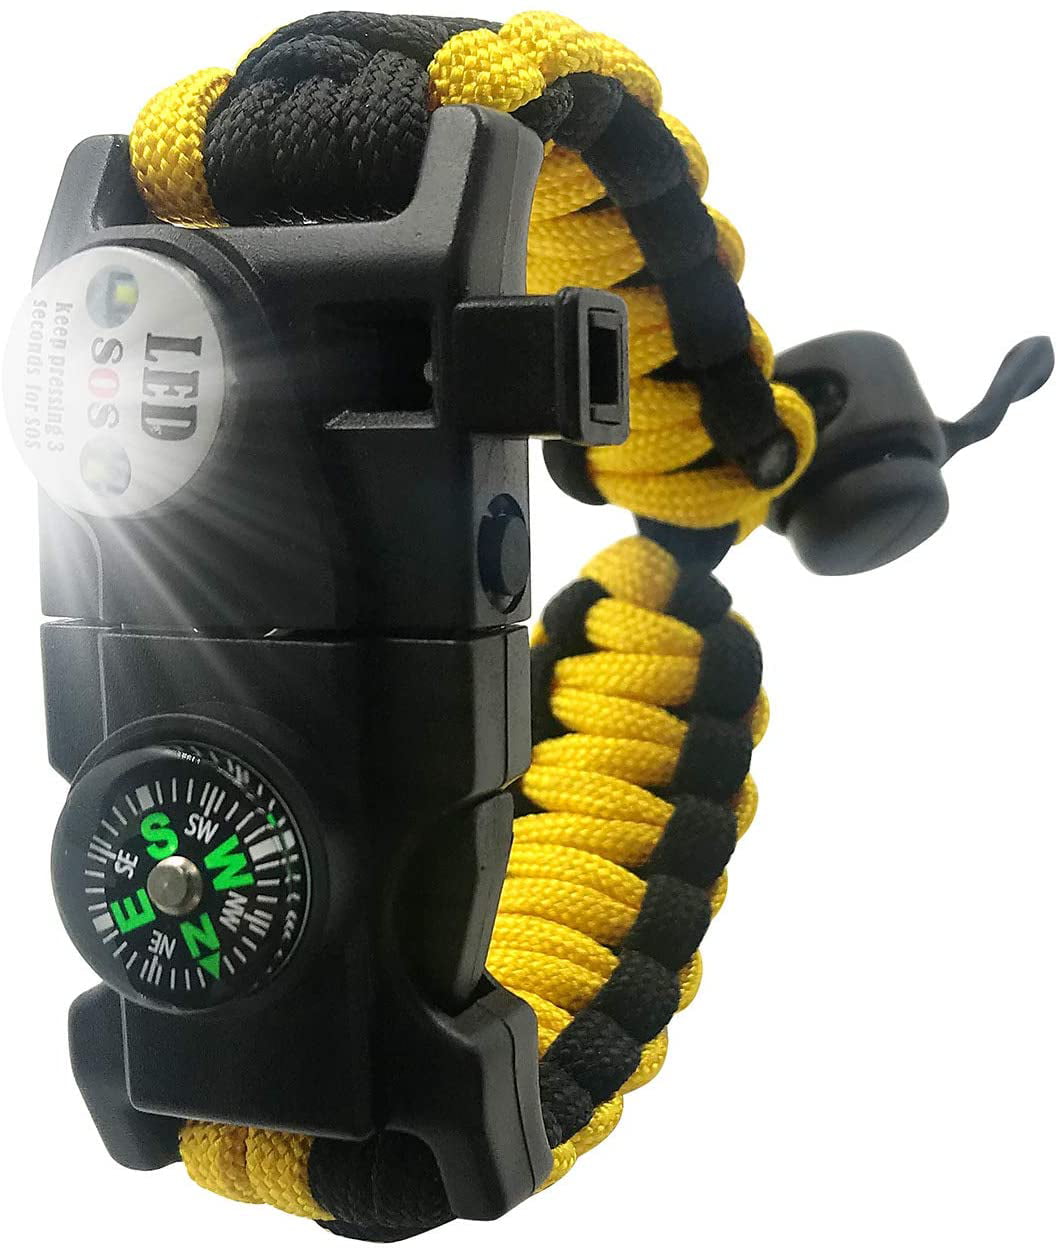 Survival Paracord Bracelet Gear SOS LED Light Compass Fire Starter Whistle Kit